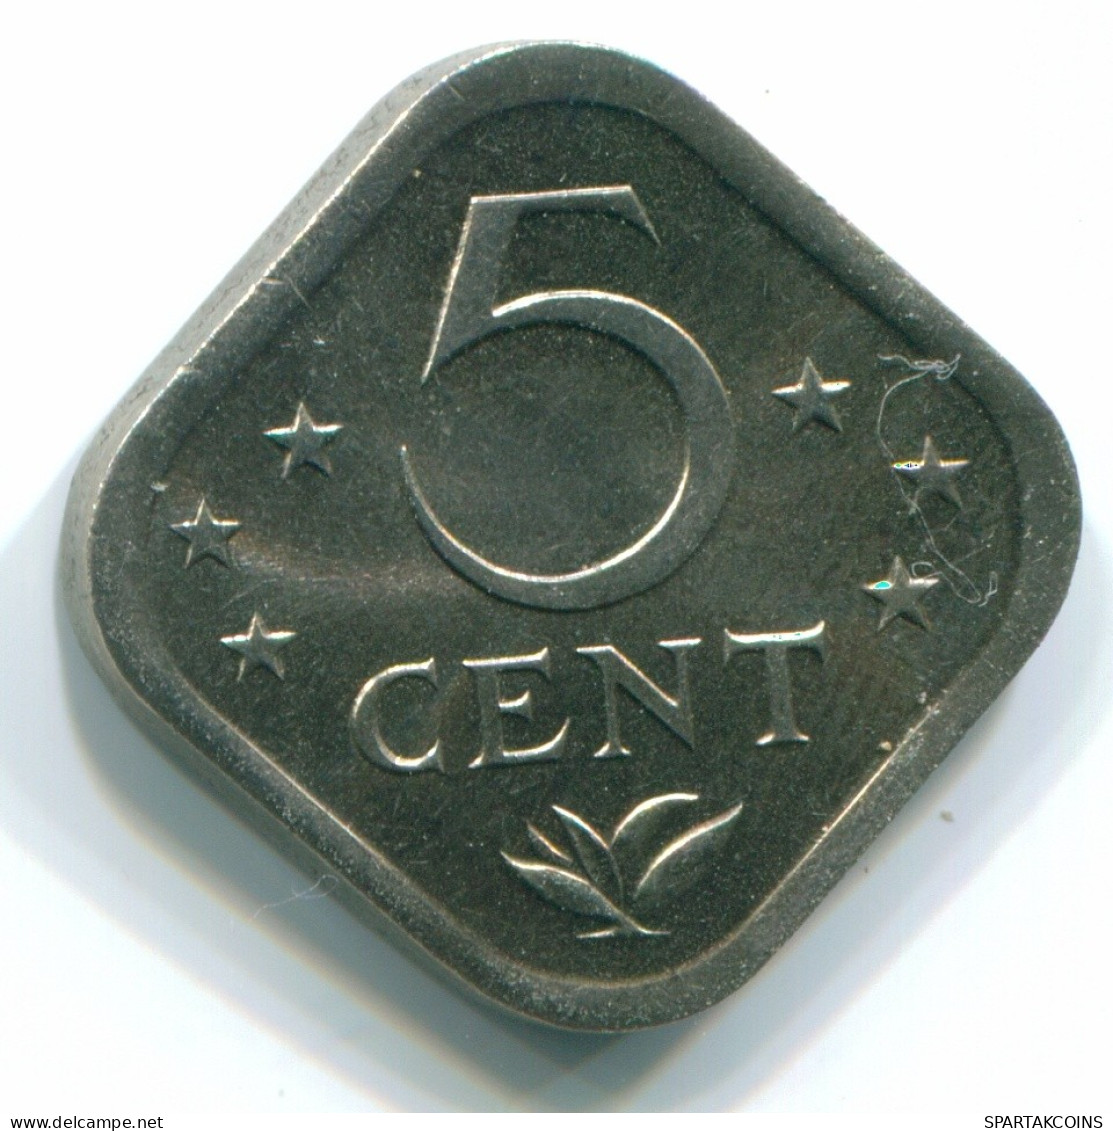 5 CENTS 1980 NETHERLANDS ANTILLES Nickel Colonial Coin #S12320.U.A - Niederländische Antillen